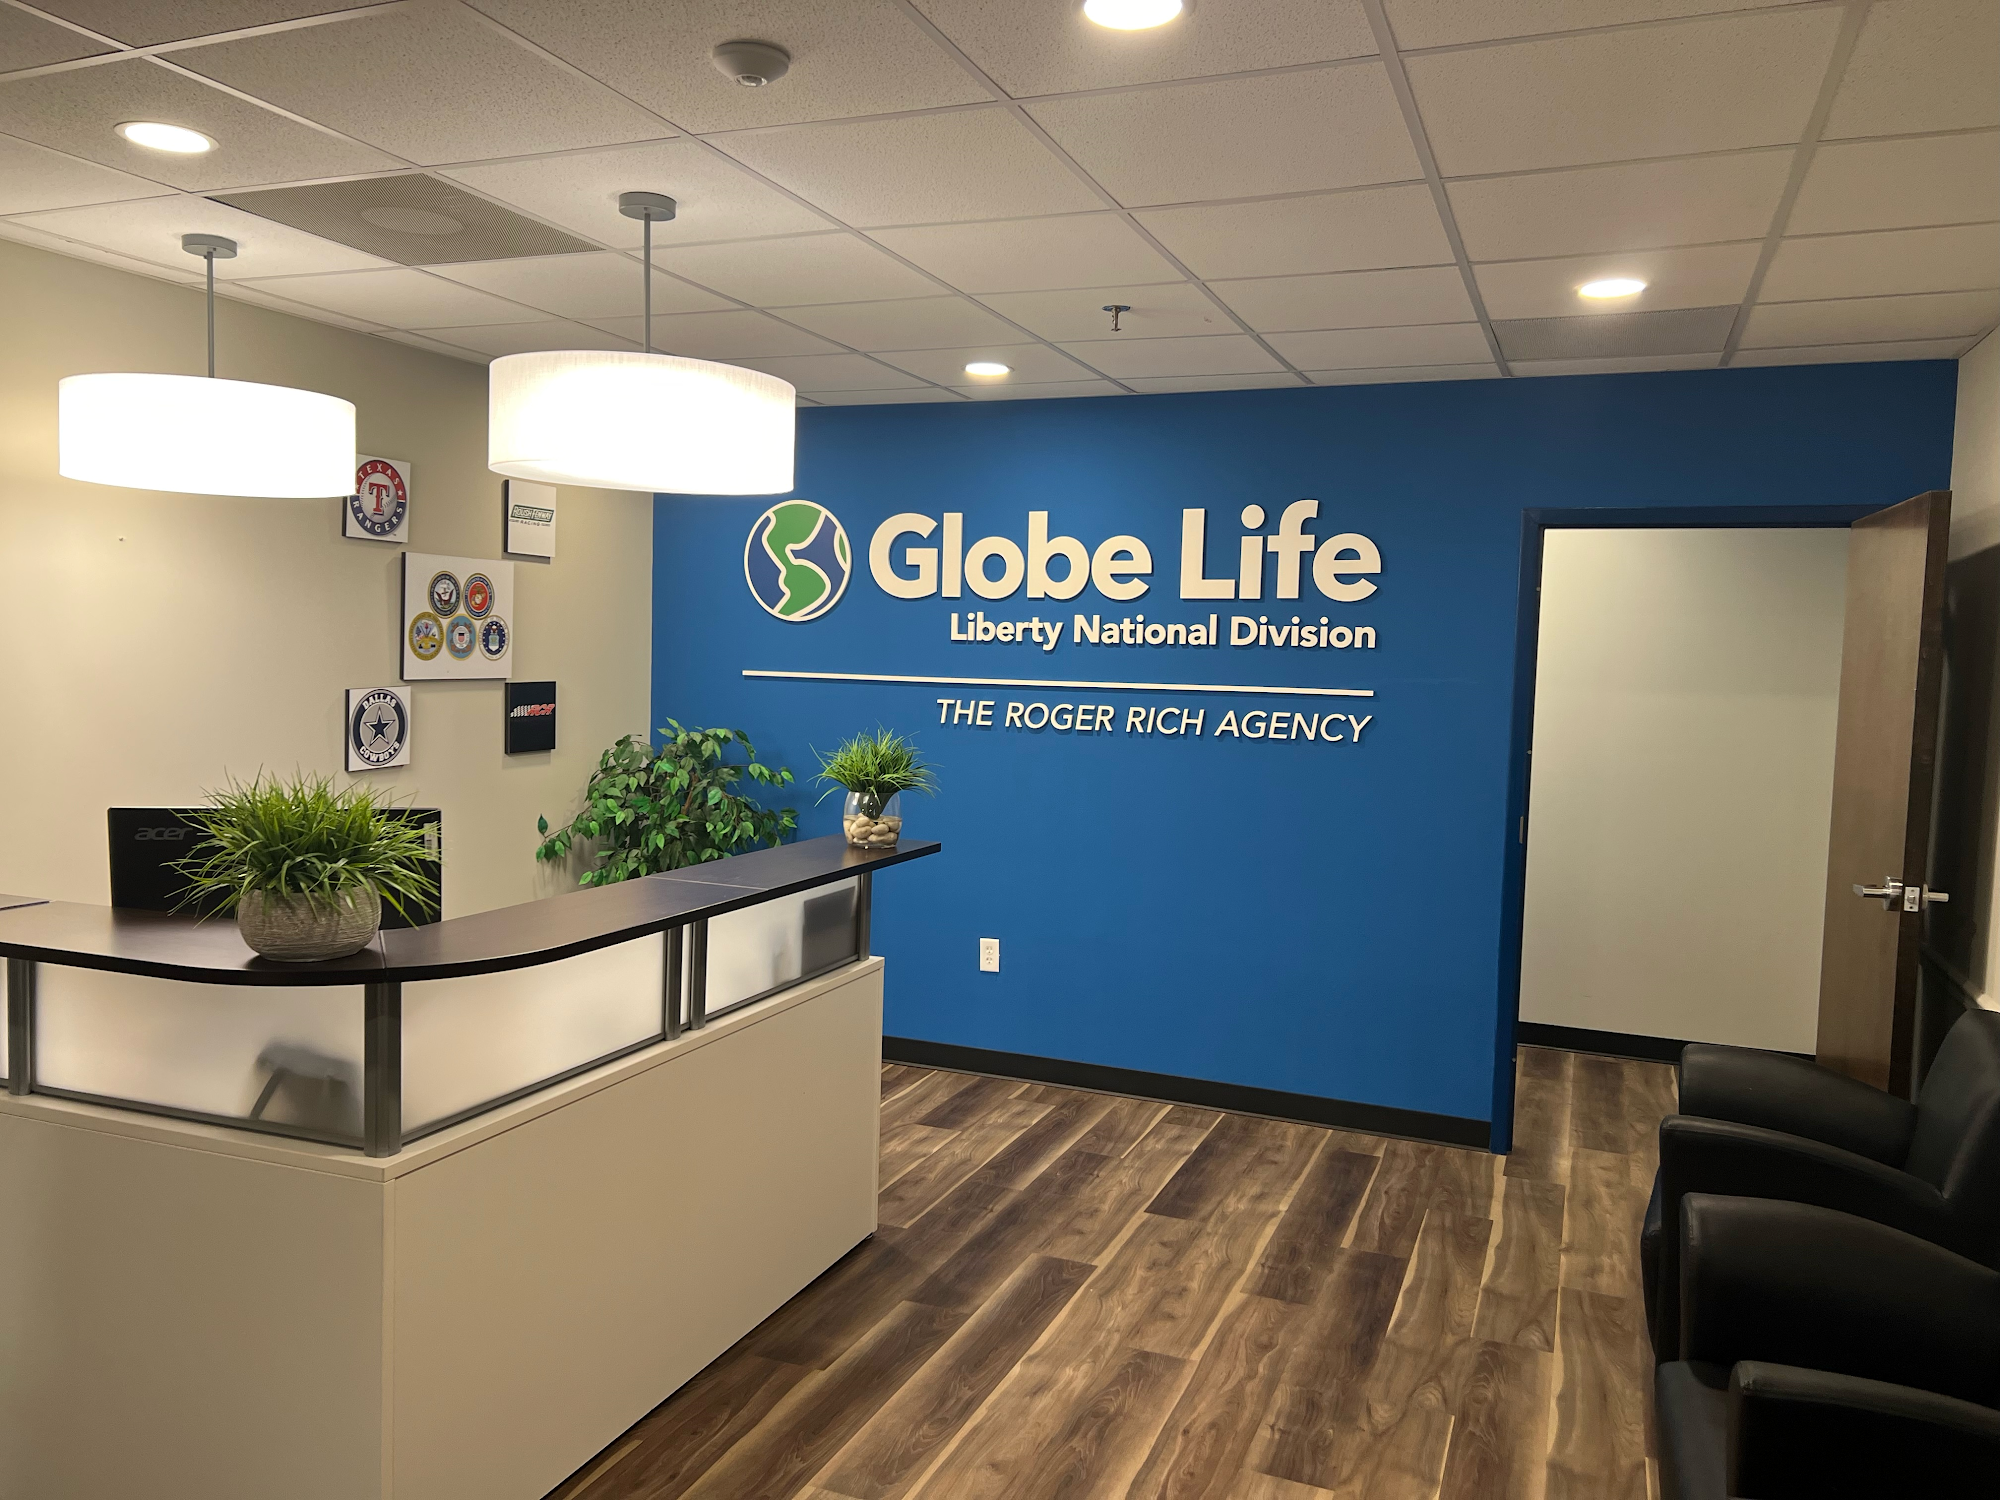 Globe Life Liberty National Division: The Rich Agencies